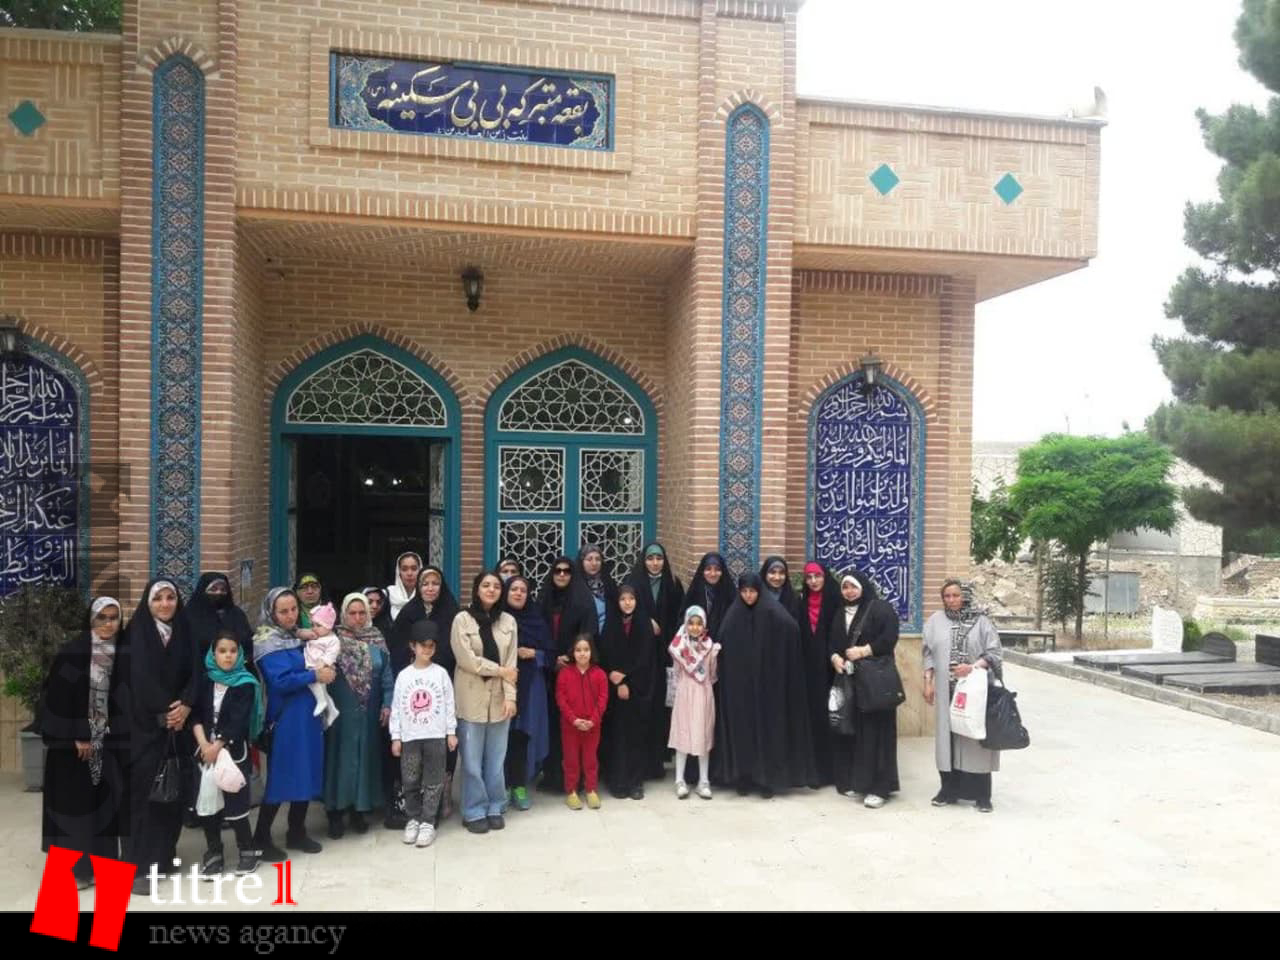 اردوی مادر و دختر در کرج برگزار شد + تصاویر